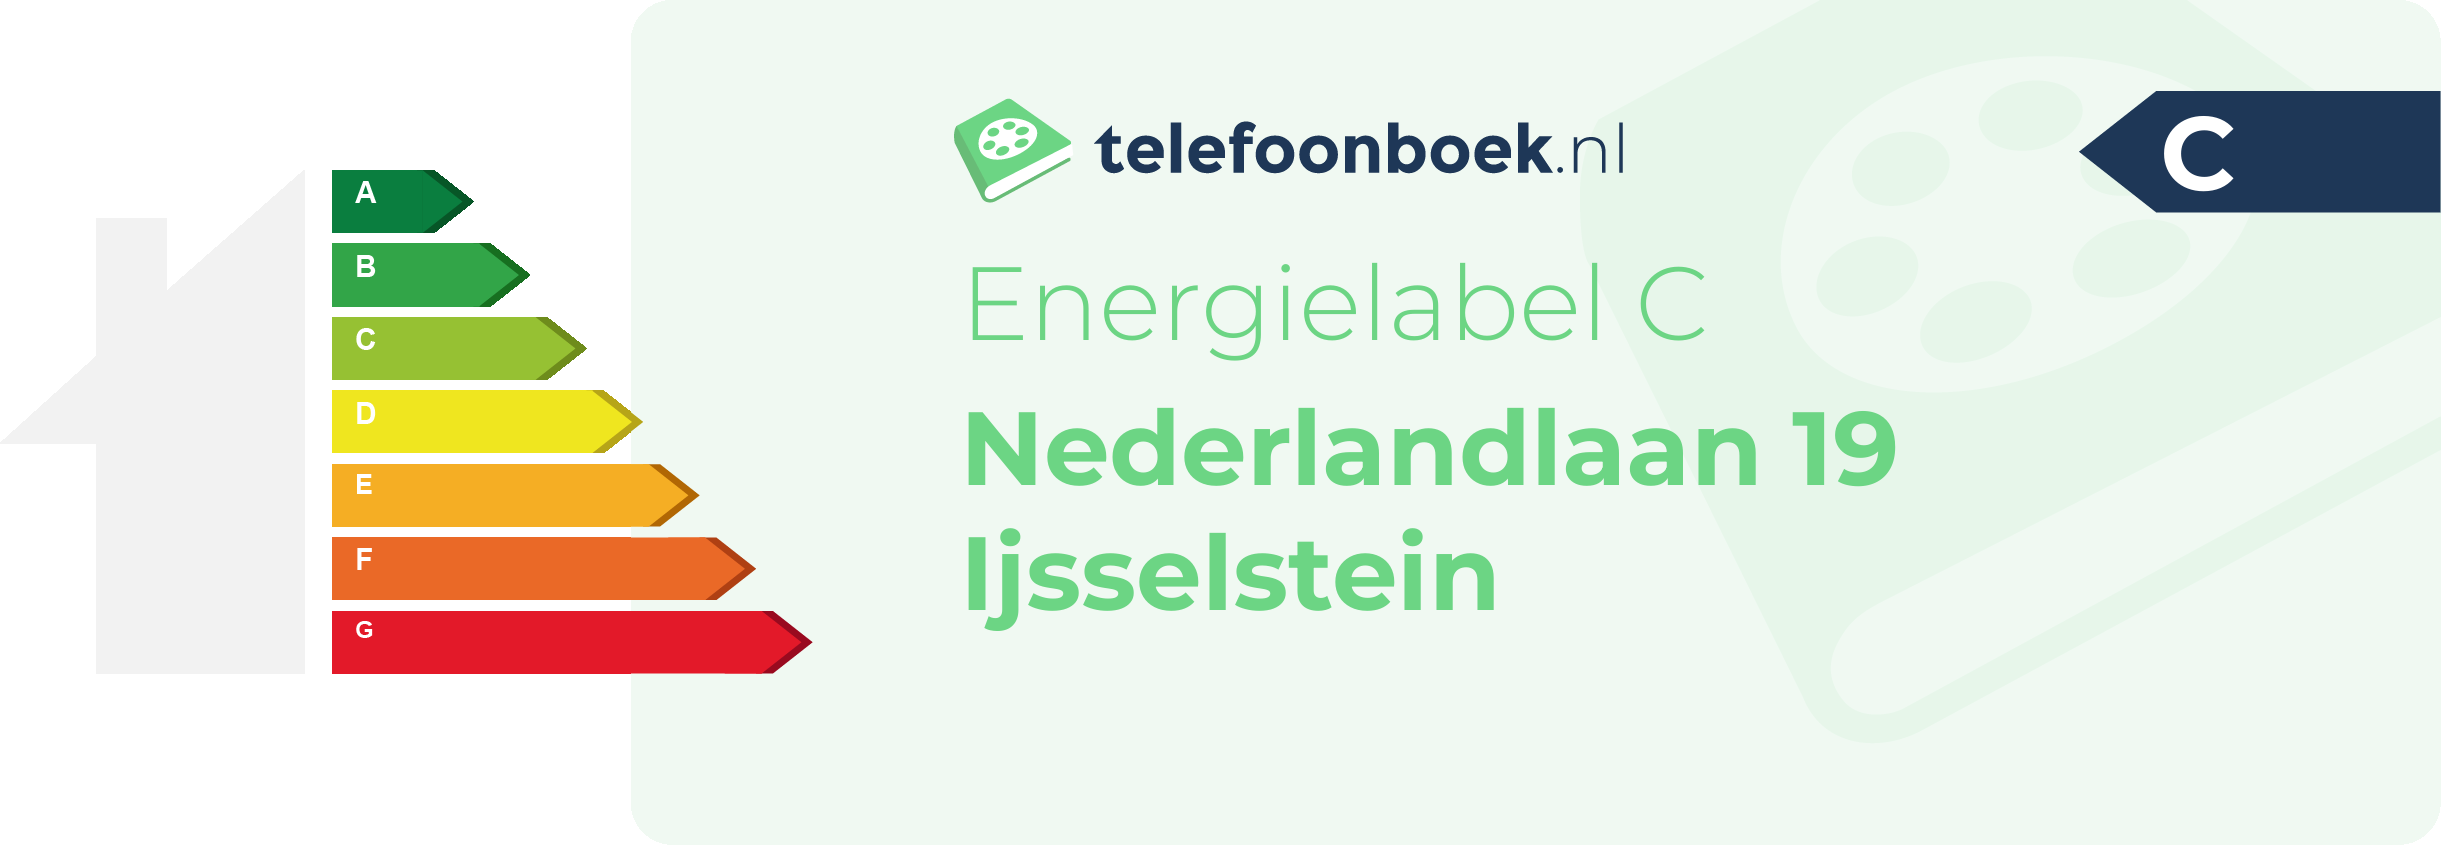 Energielabel Nederlandlaan 19 Ijsselstein